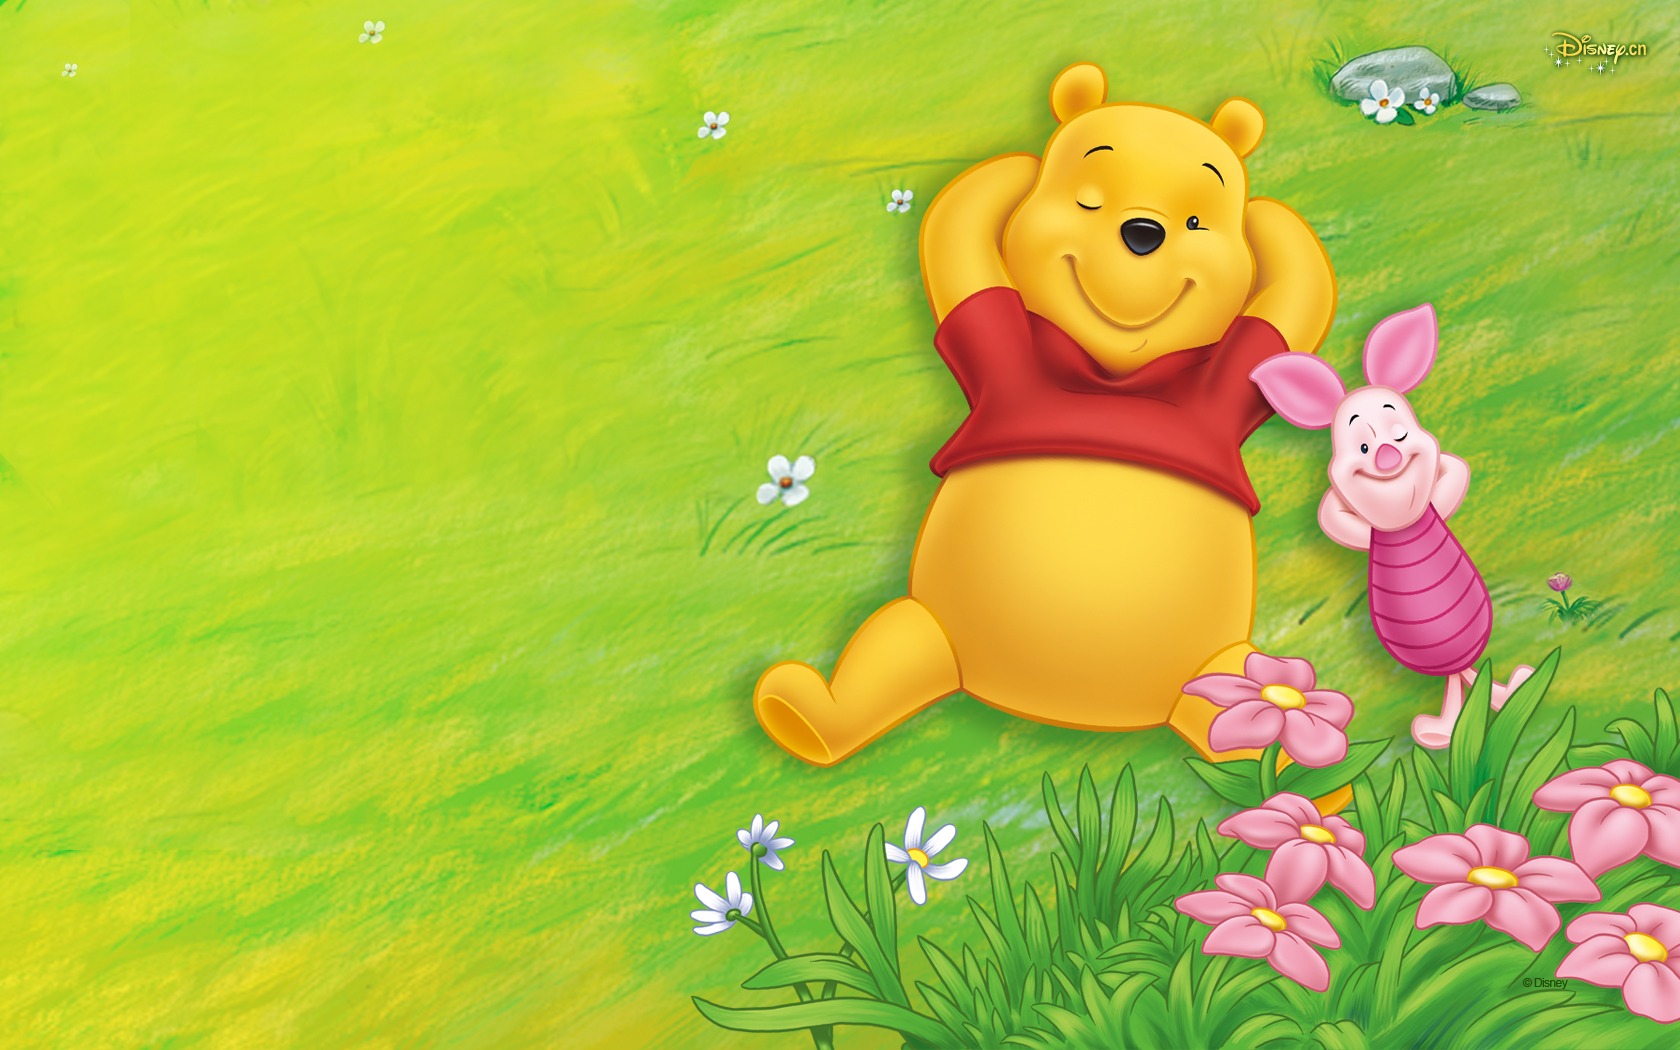 Walt Disney Cartoon Winnie The Pooh Wallpaper